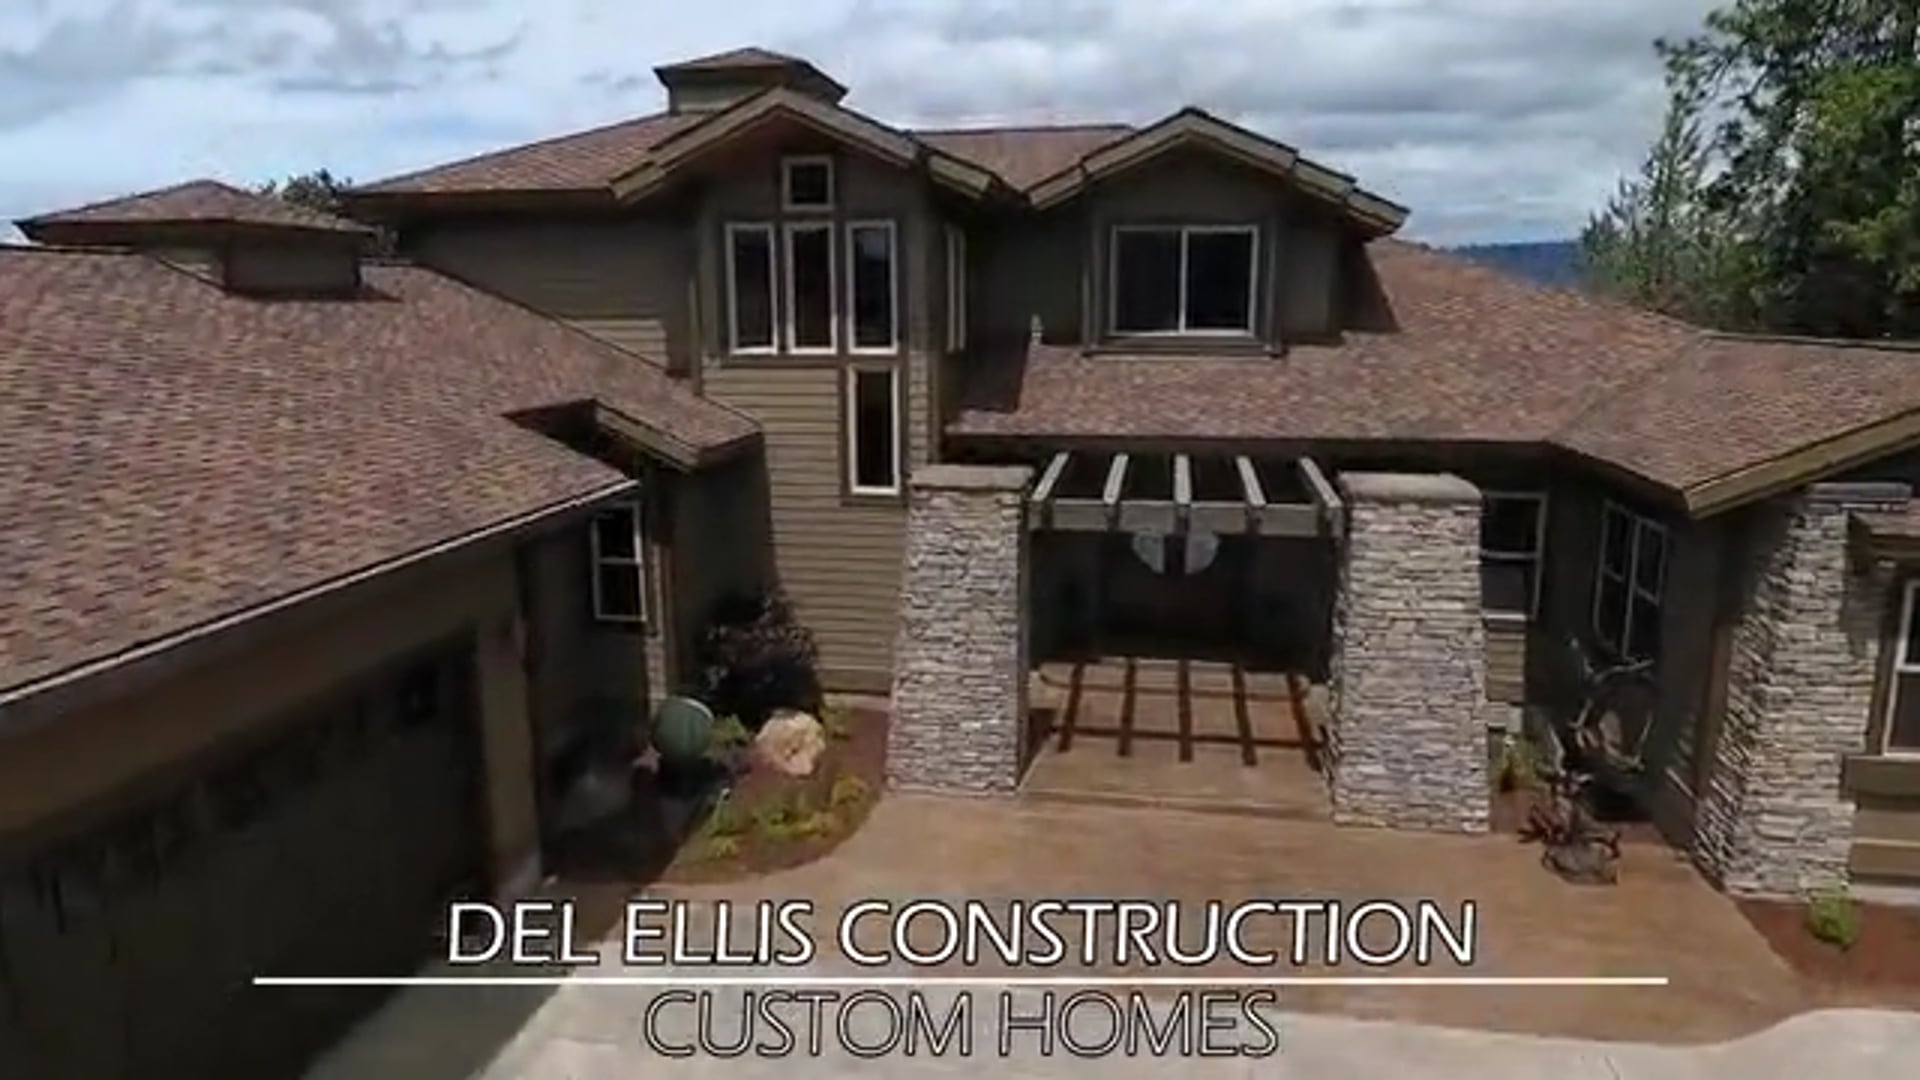 Del Ellis Construction